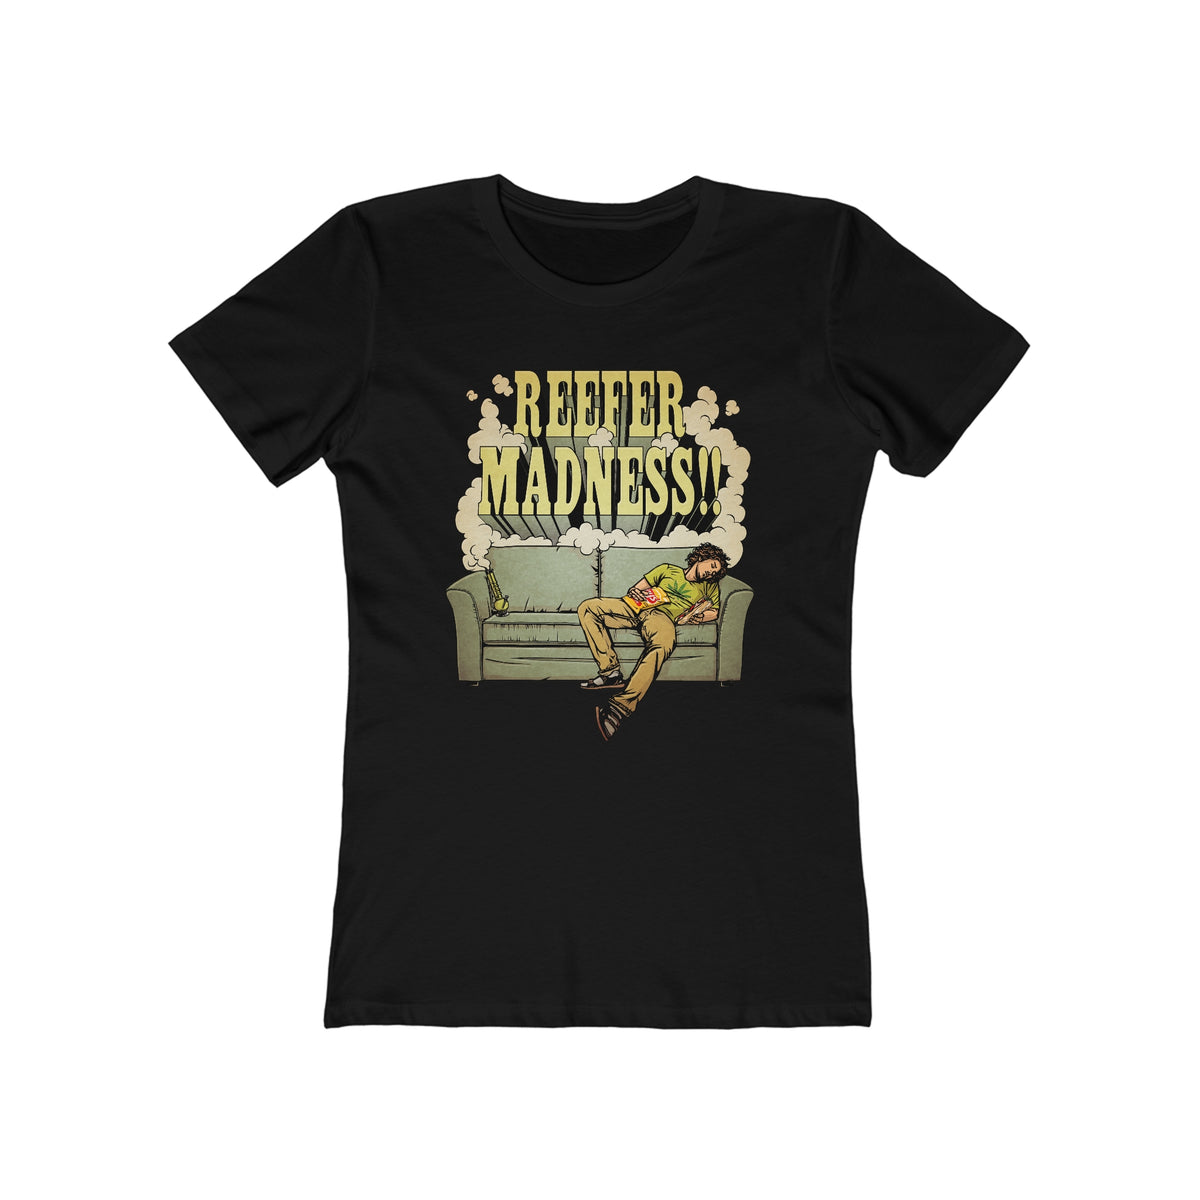 Reefer Madness! - Women’s T-Shirt